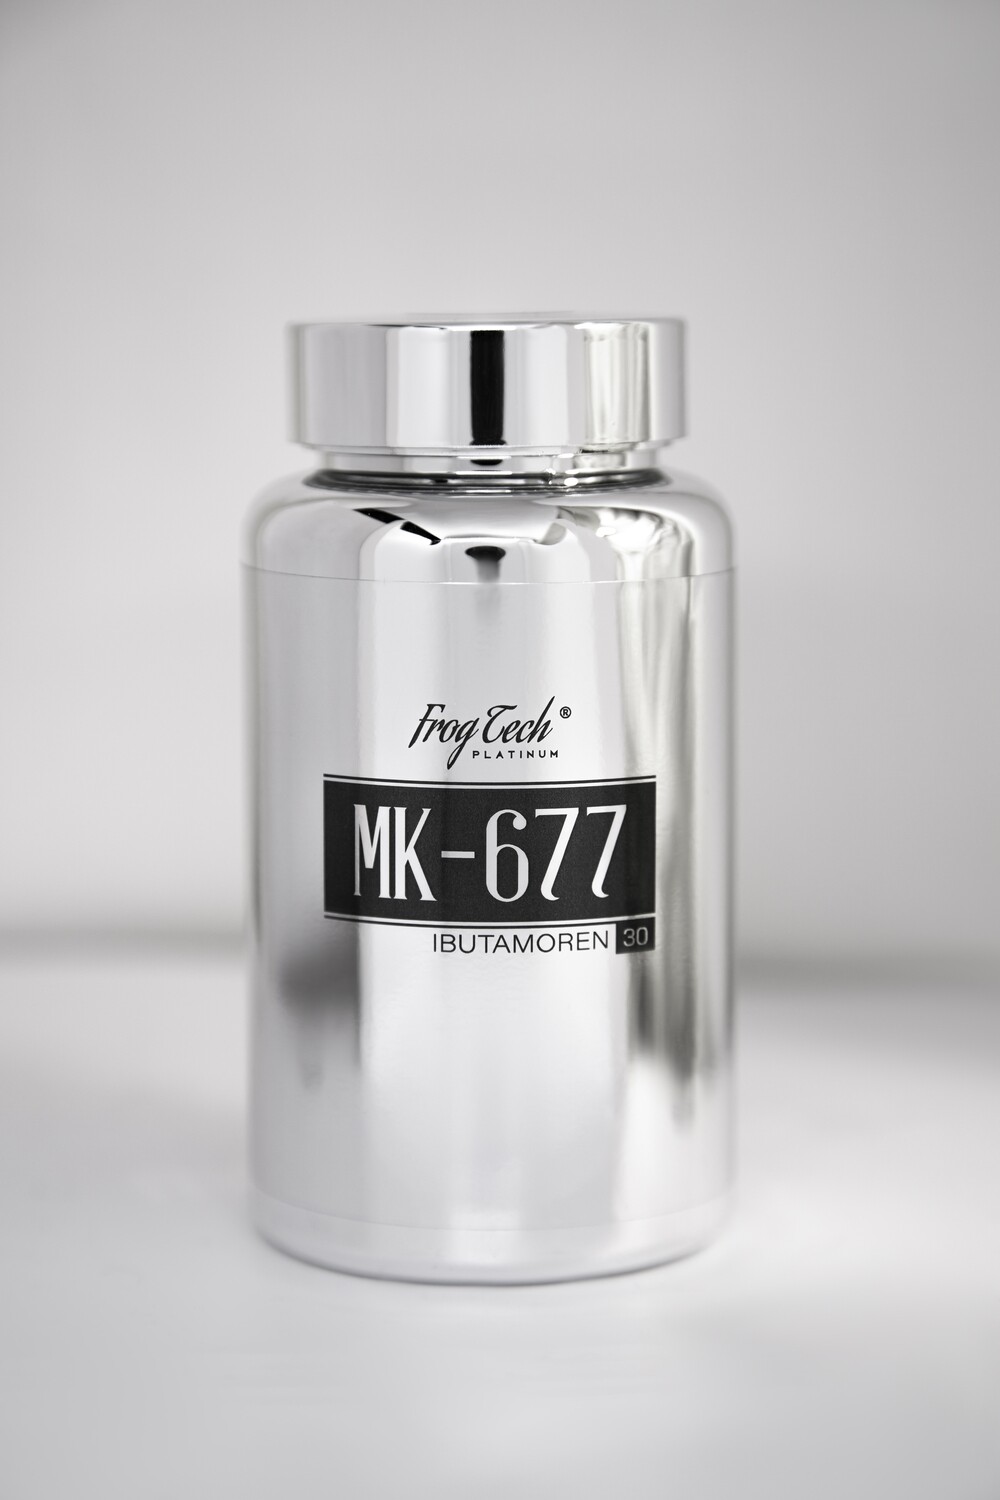 Ibutamoren 25mg (Nutrobol, MK 677, Ибутаморен) 30 капсул купить от FROGTECH Platinum